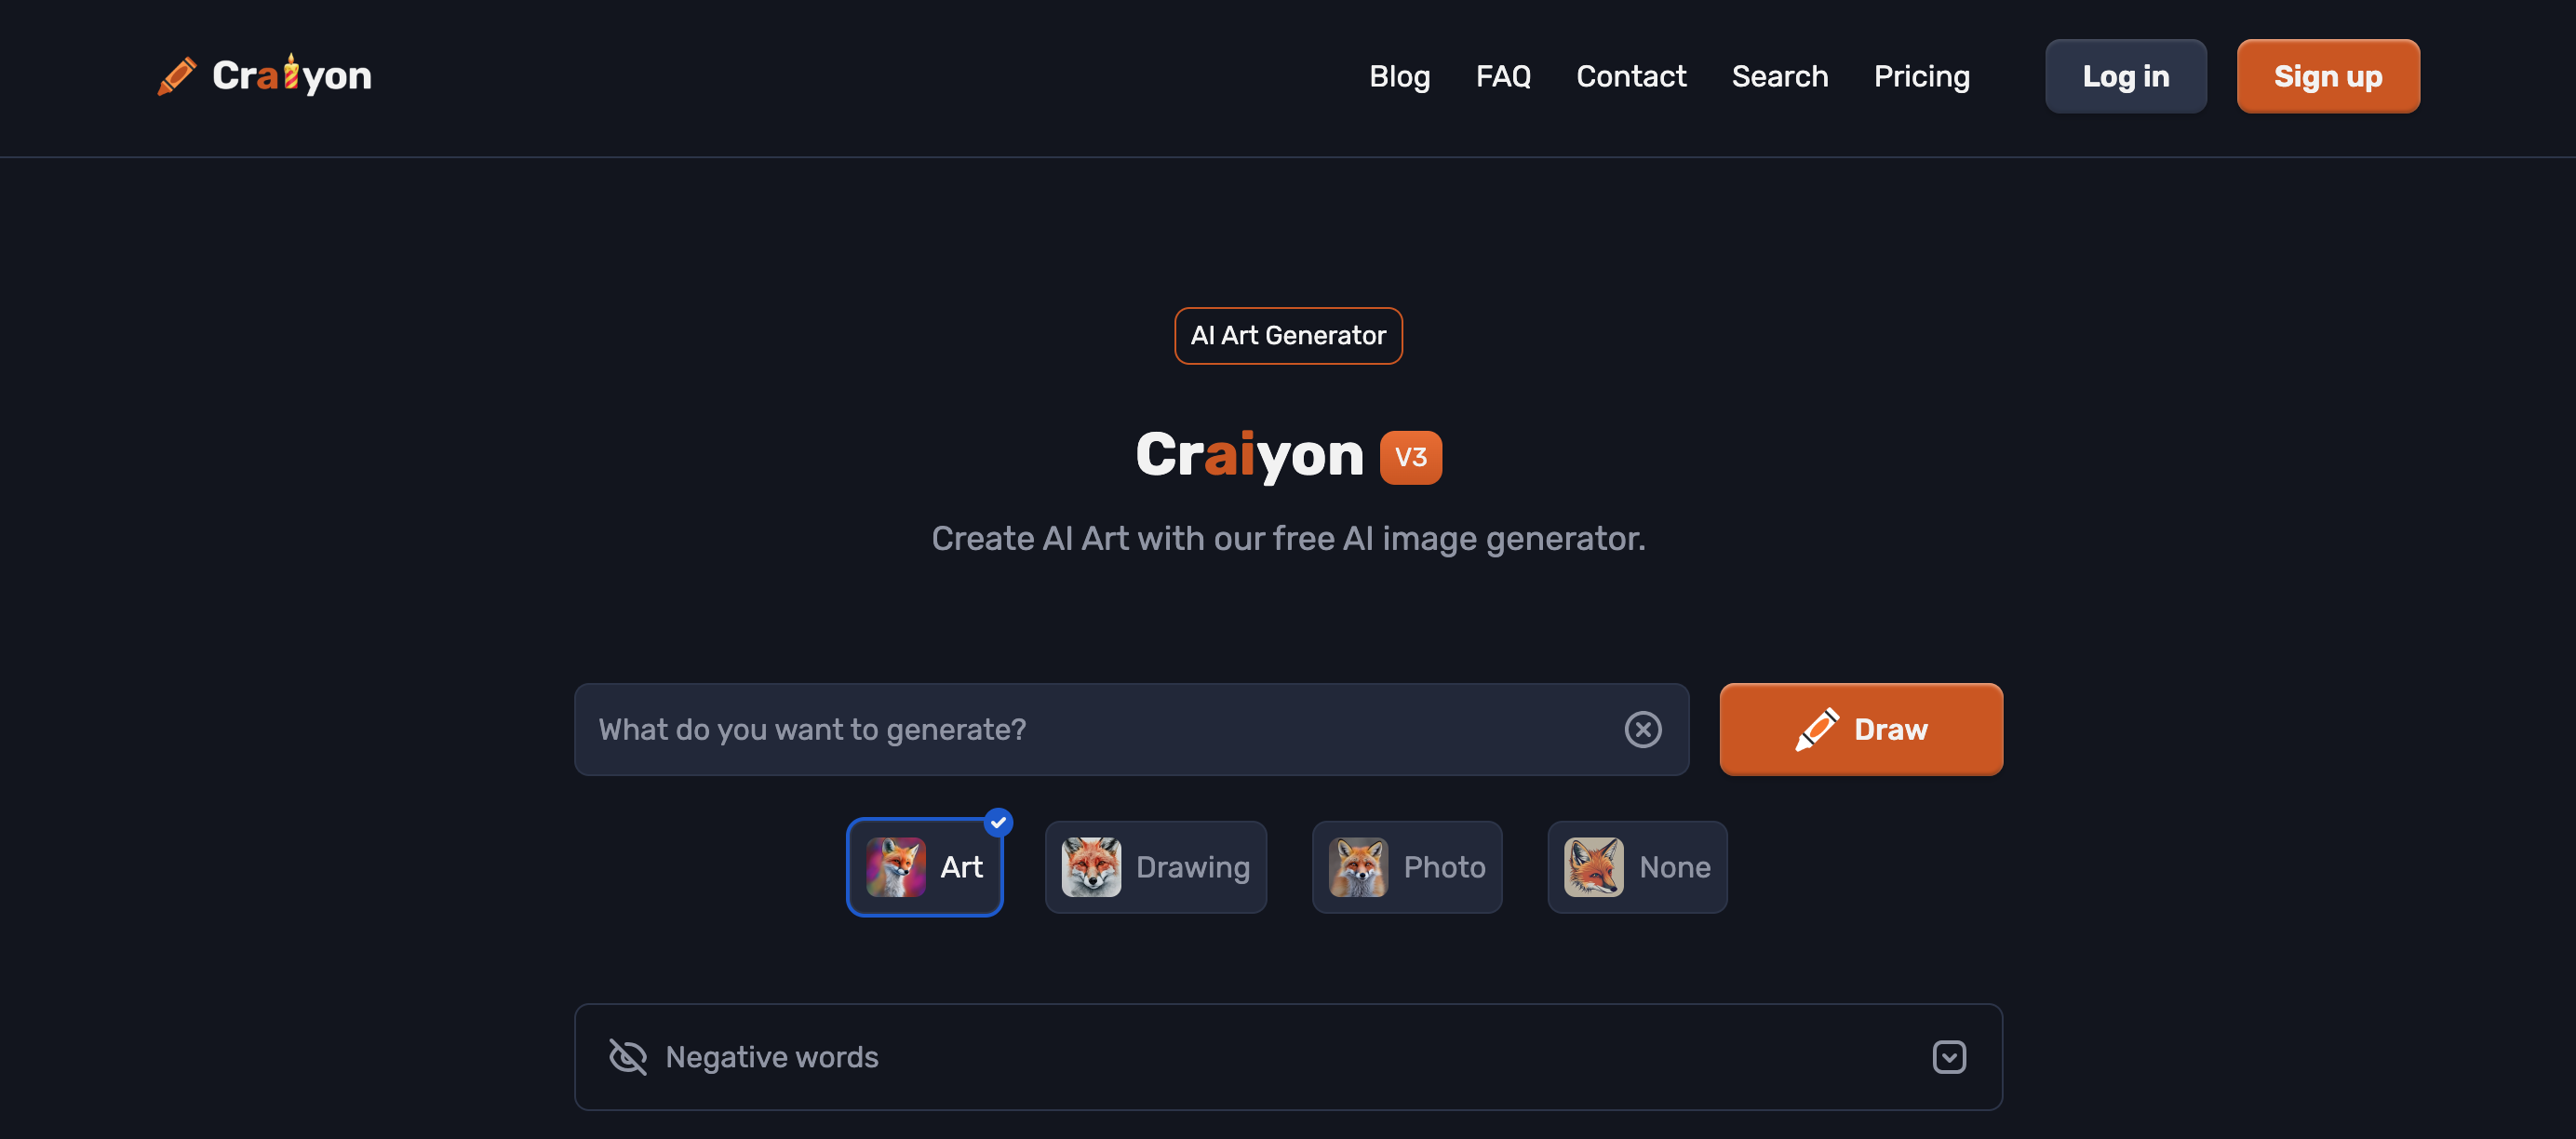 Captura de pantalla de la página web de Craiyon